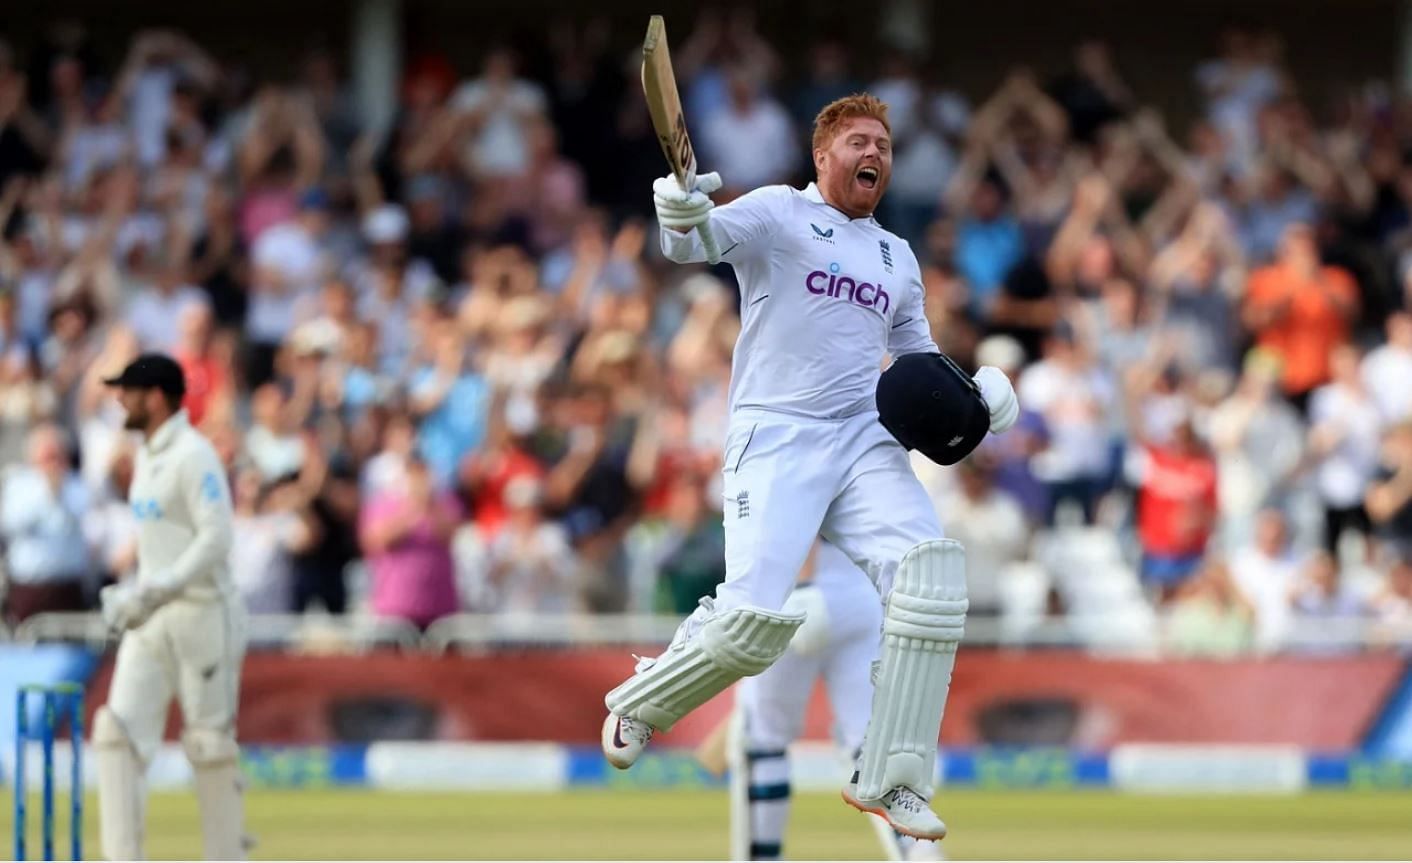 टेस्ट में बाउंड्री के जरिये एक हजार से ज्यादा रन इंग्लैंड-न्यूजीलैंड के बीच खेले गए मैच में बने